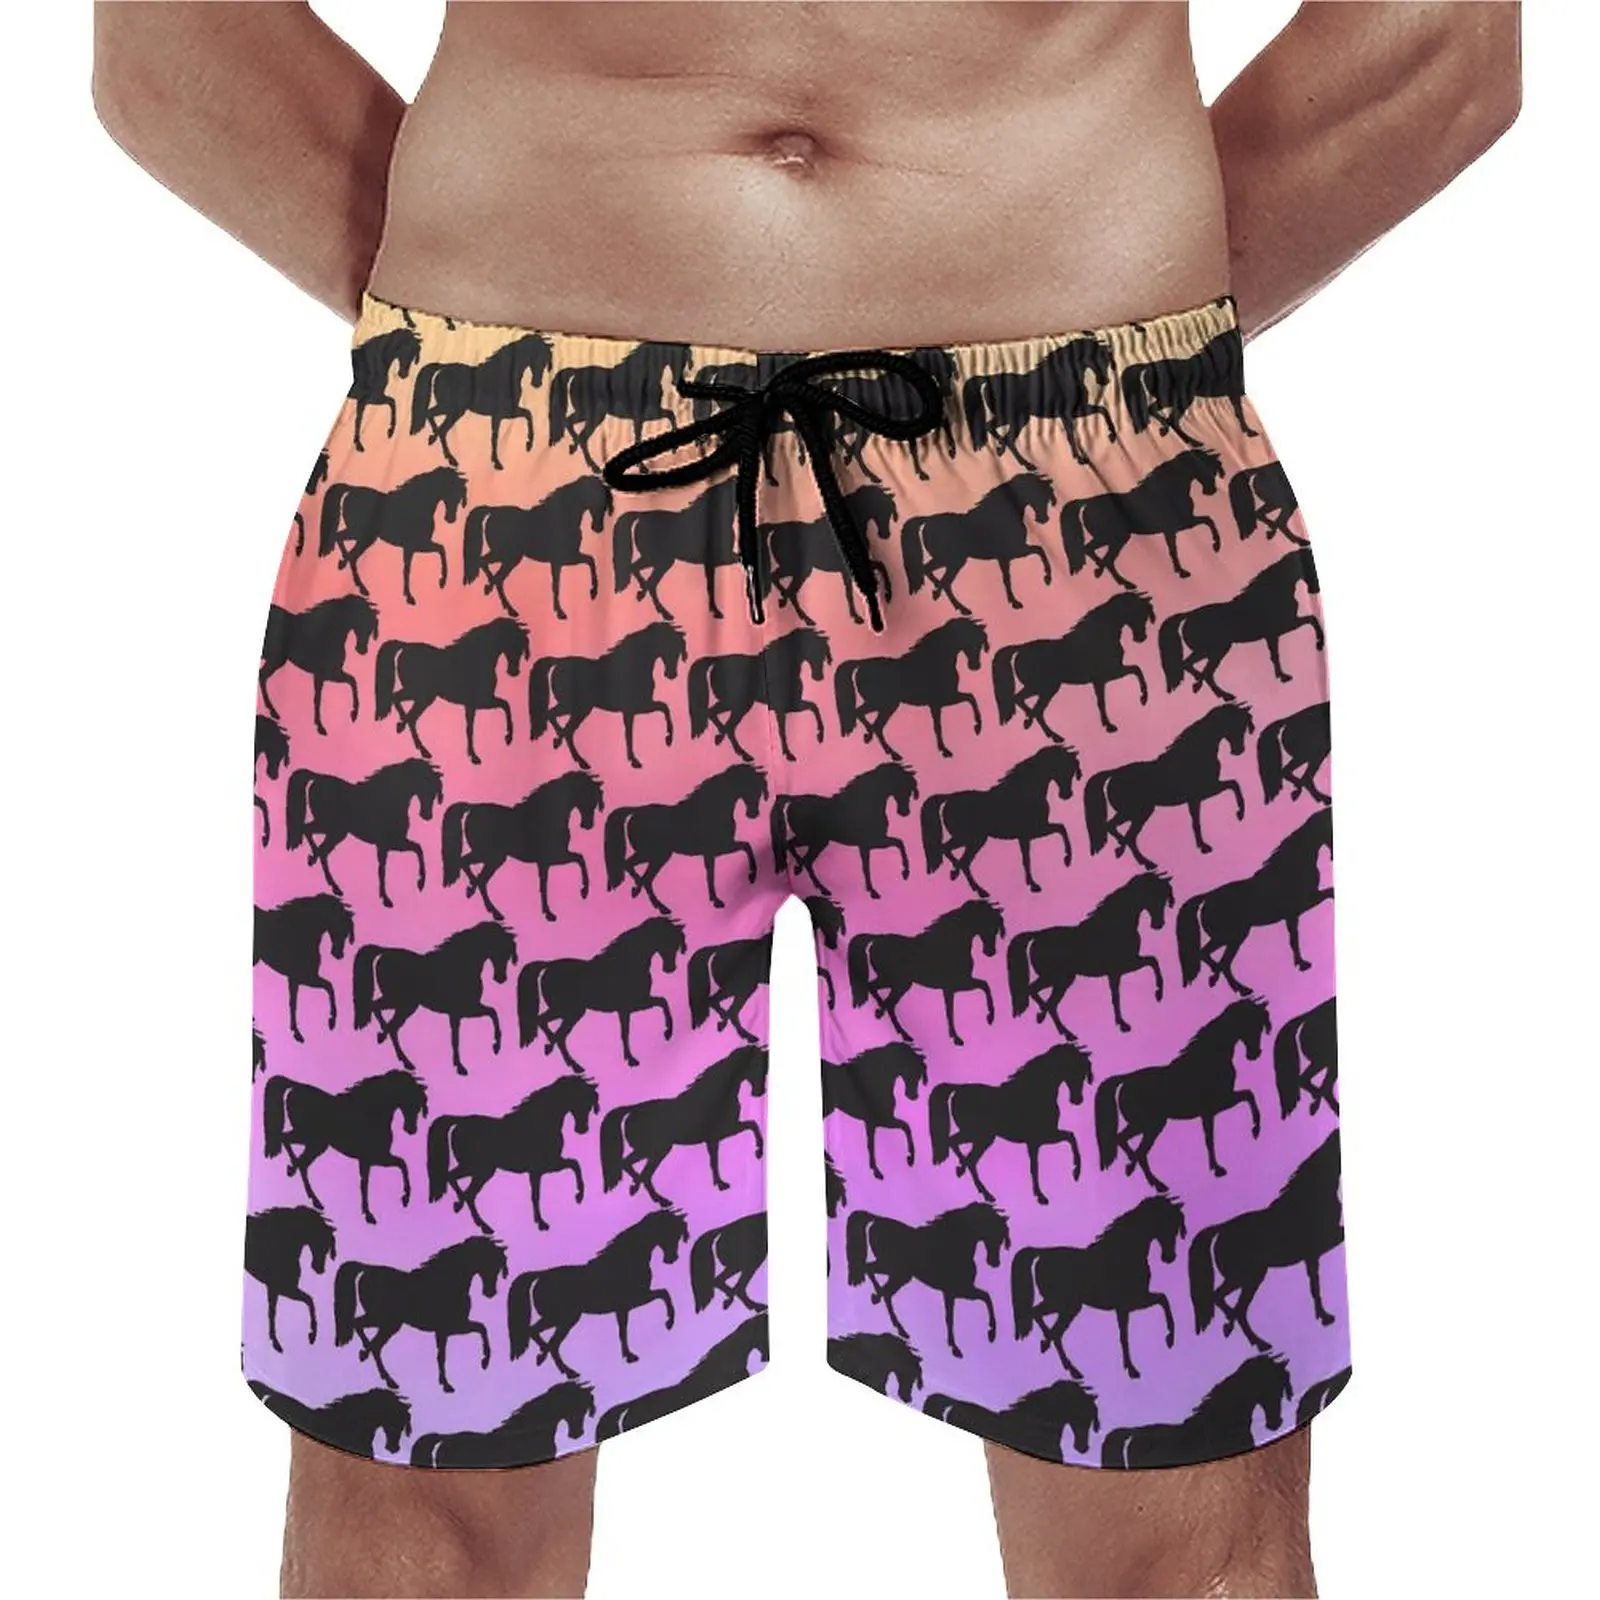 

Пляжные шорты для серфинга мужские, удобные модные пляжные трусы с принтом лошадей, закат, радуга, индивидуальный пошив, большие размеры, летние